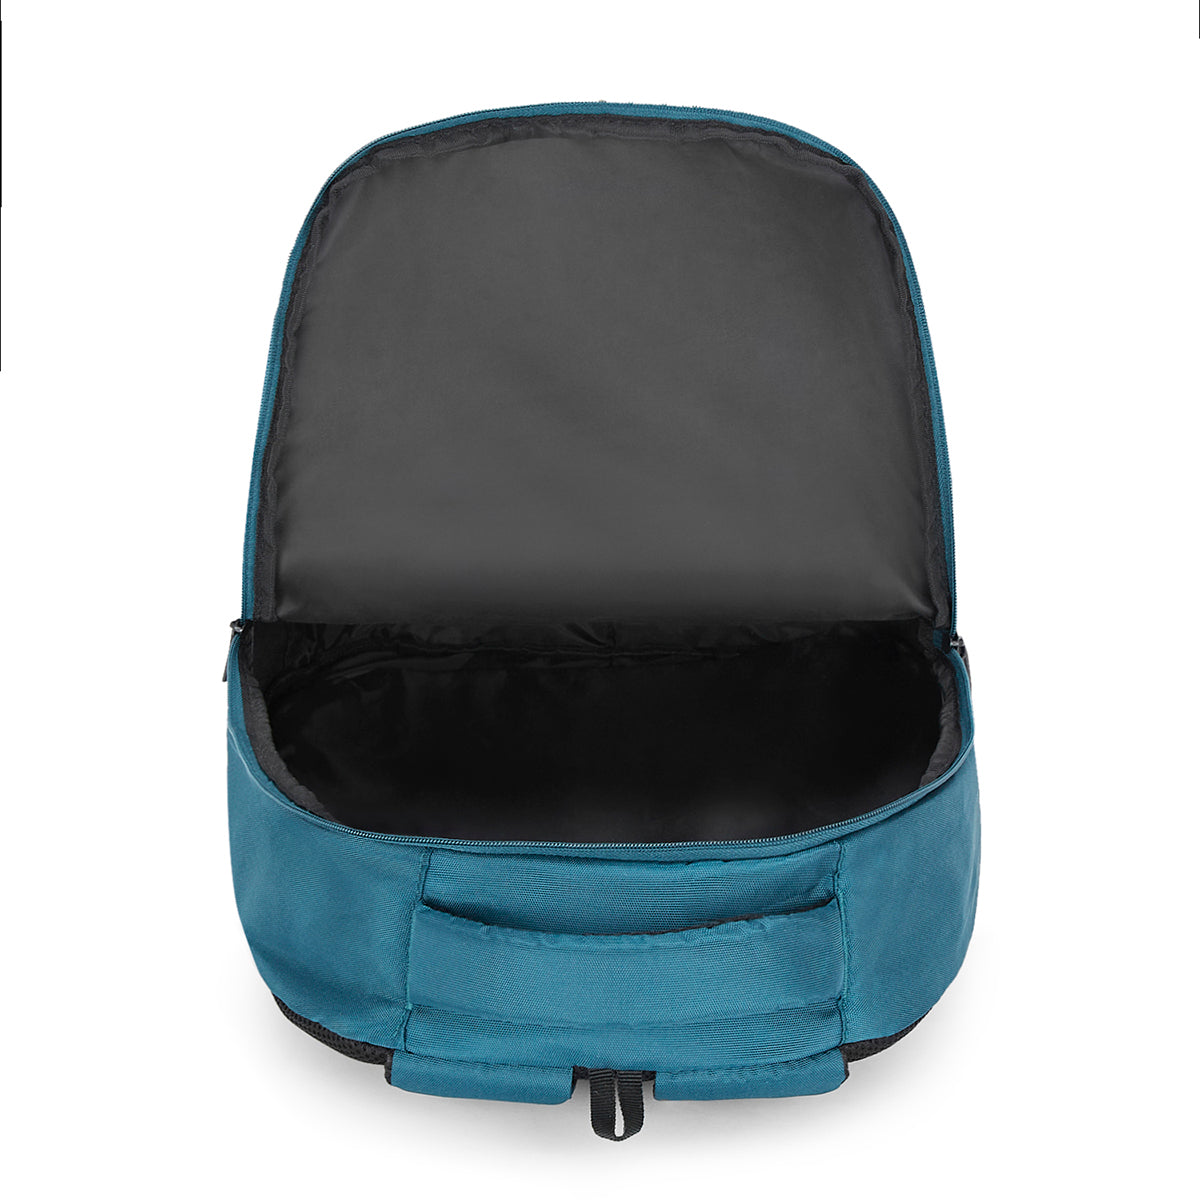 The Vertical Cayden Laptop Backpack teal